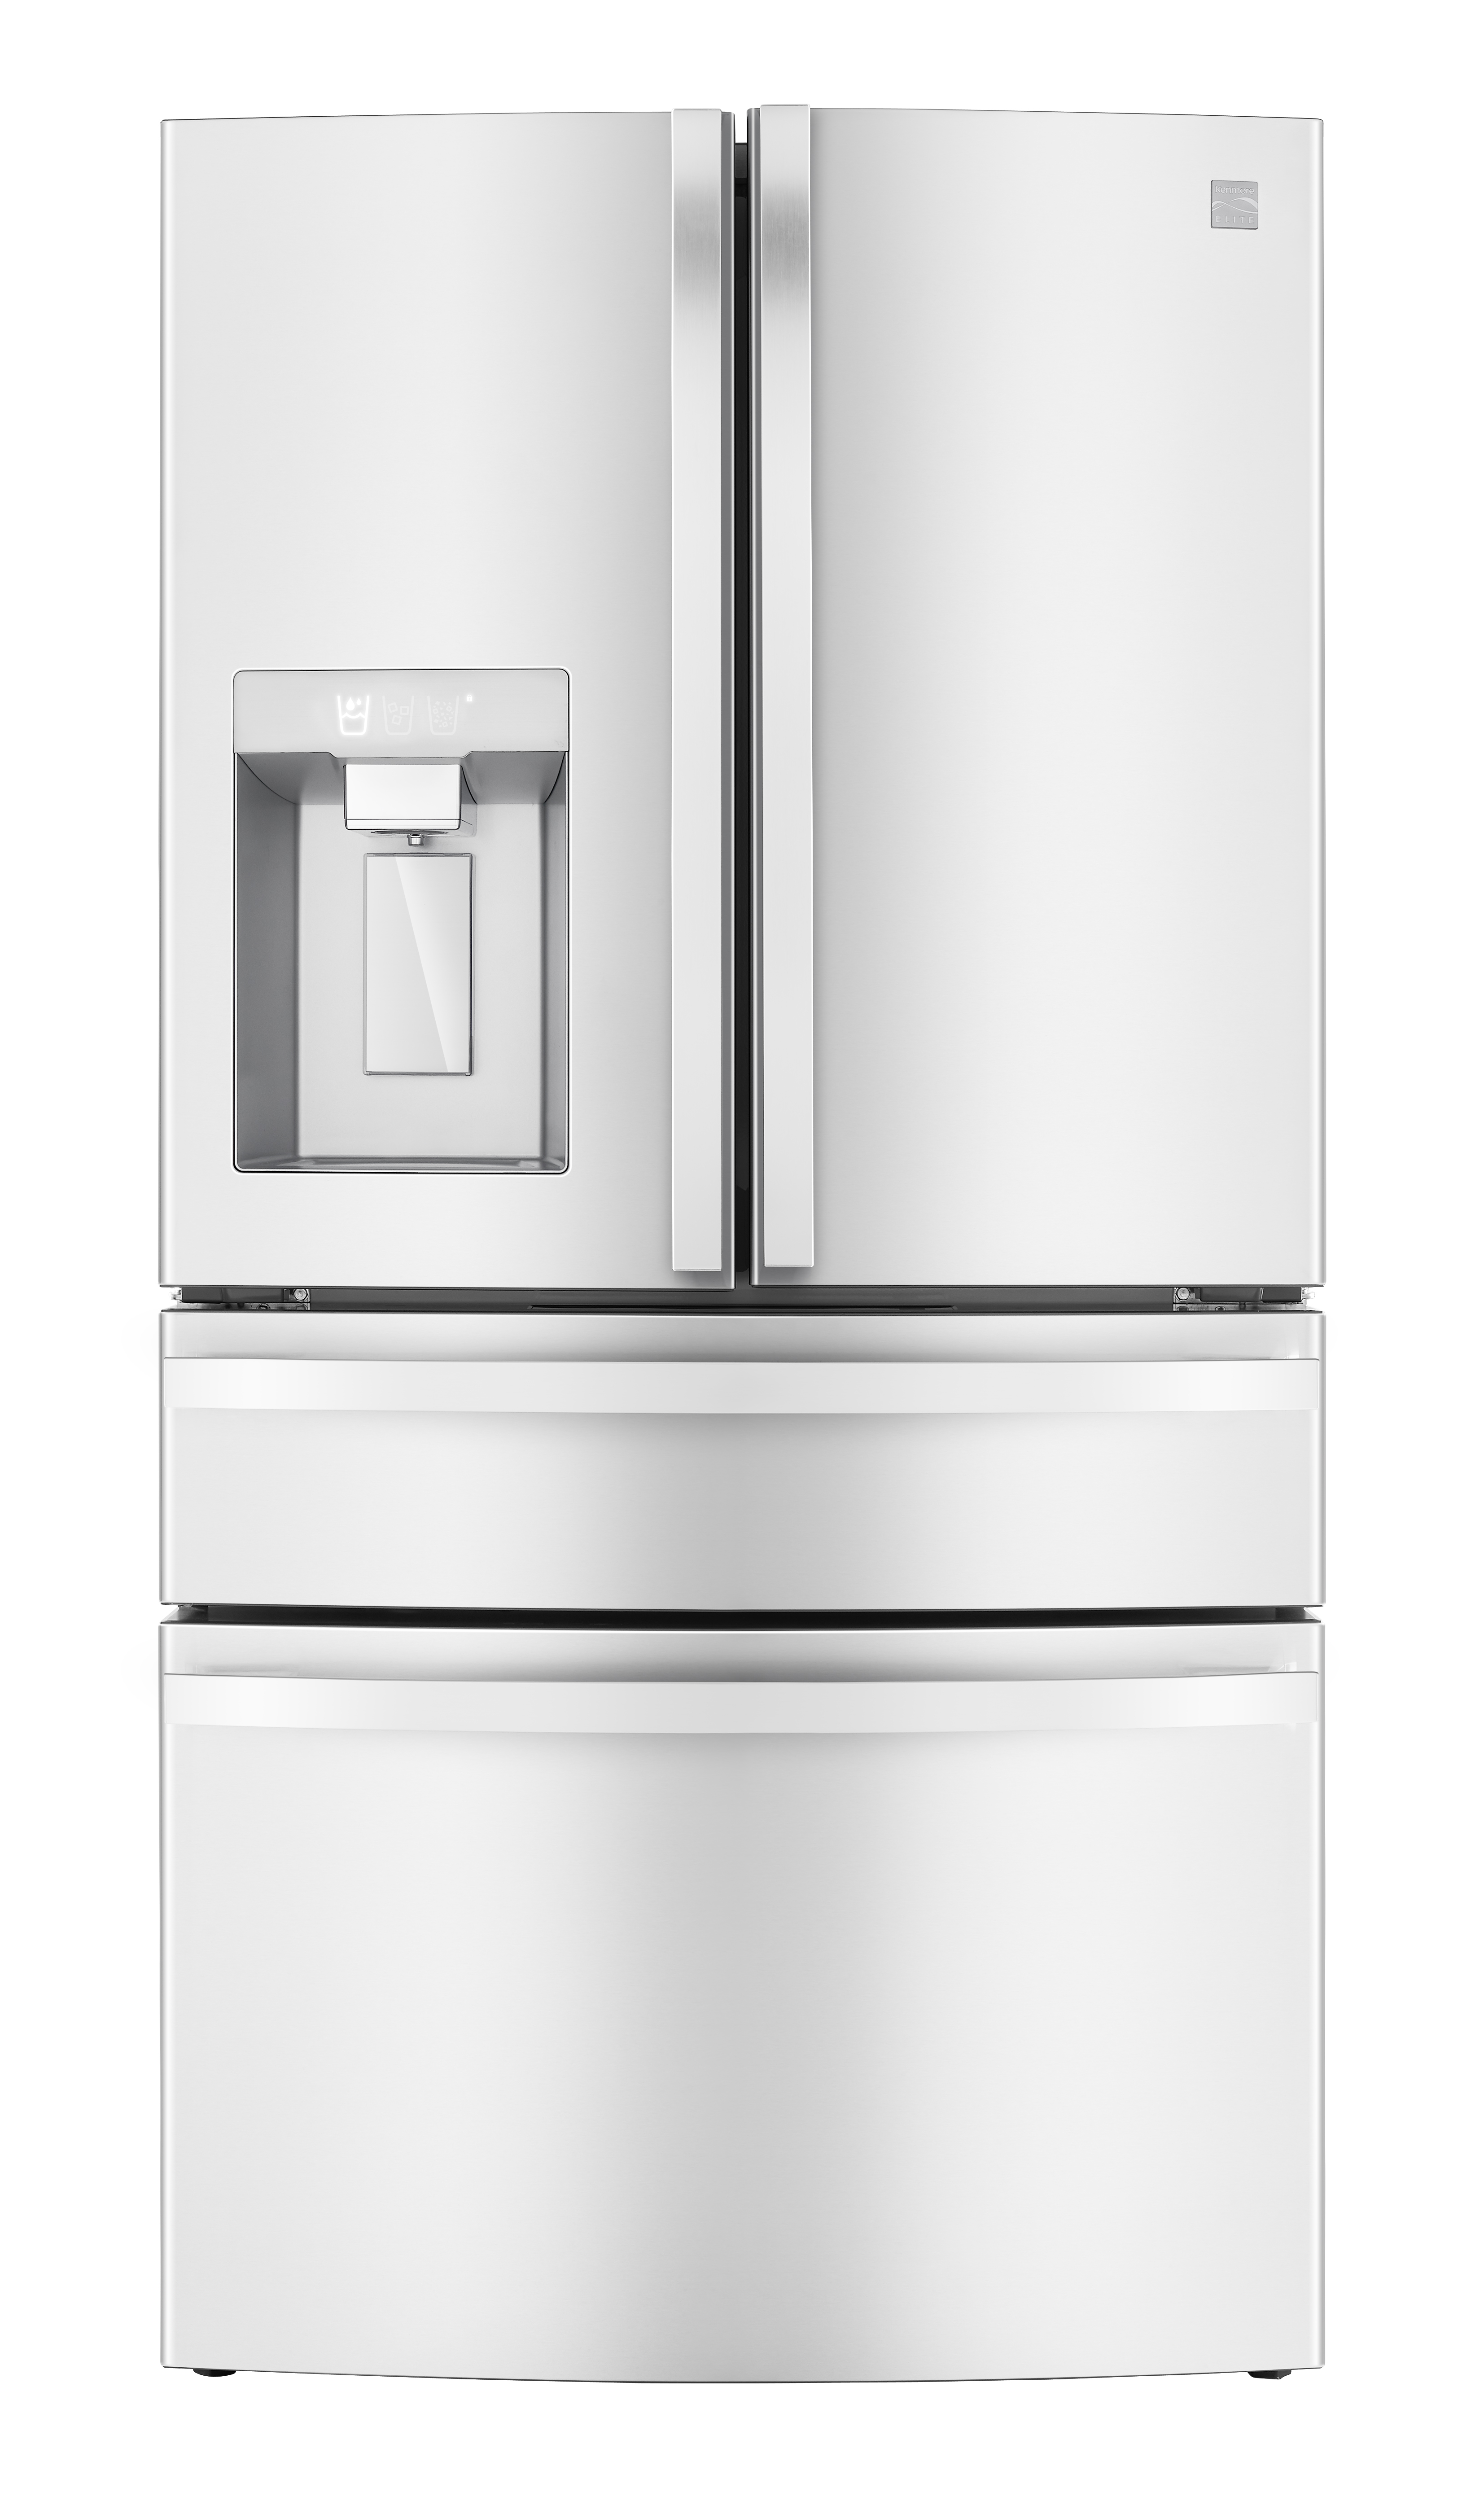 Kenmore Elite 72692 29.5 cu. ft. Smart 4-Door French Door Refrigerator - White